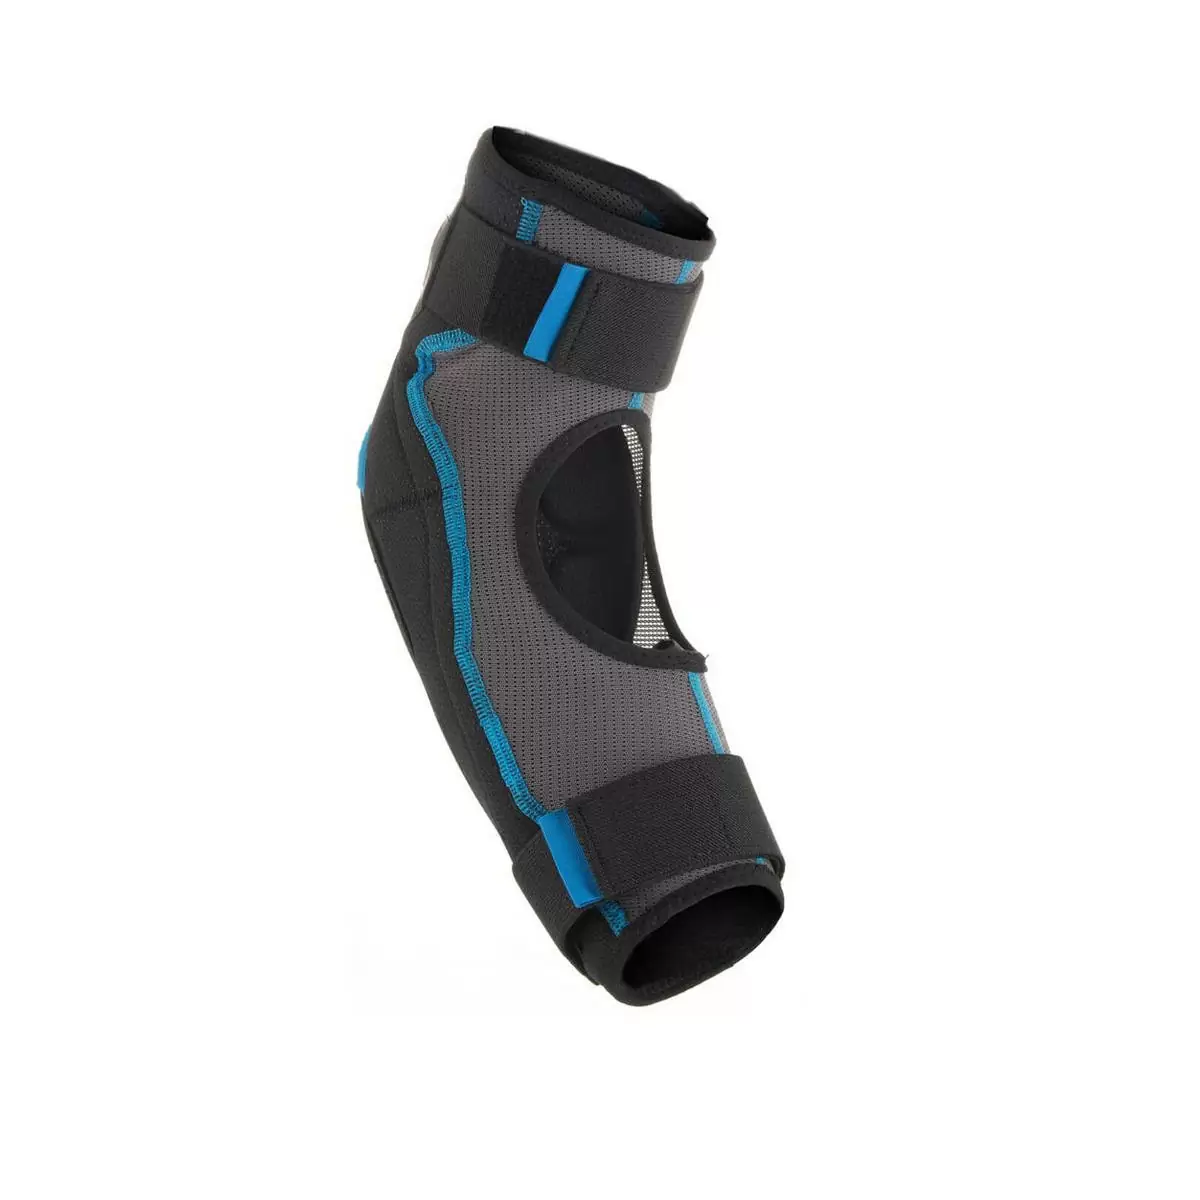 Elbow pads E-Ride black / blue size S/M #1